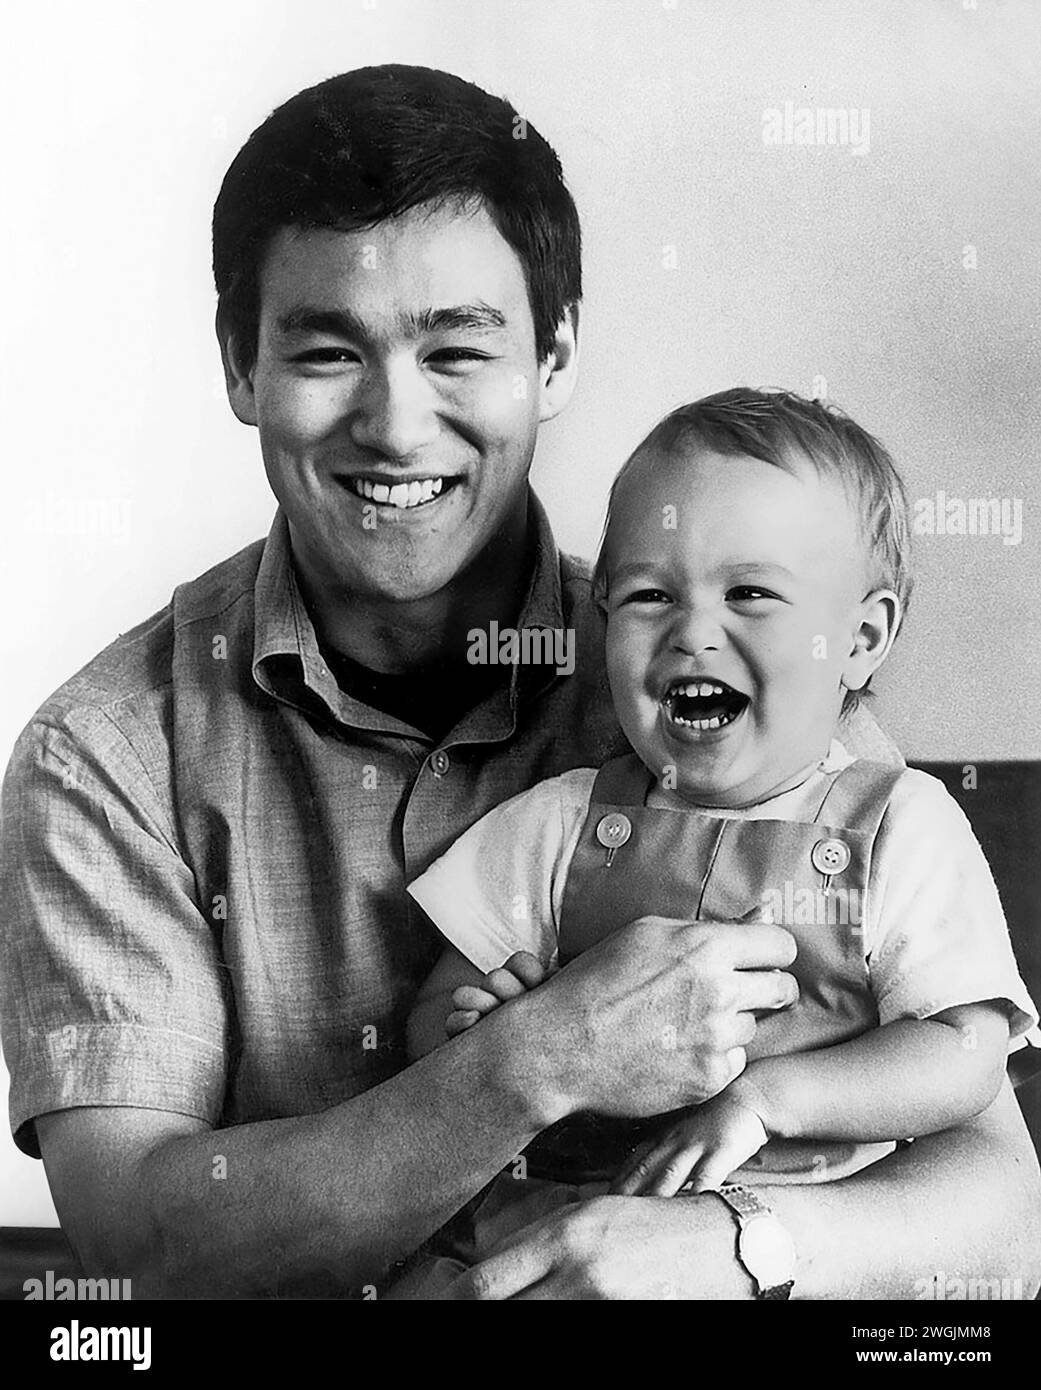 Bruce Lee. Retrato del artista y actor marcial estadounidense de Hong Kong, Bruce Lee (nacido en Lee Jun-fan, 1940-1973) con su hijo, Brandon, 1966 Foto de stock